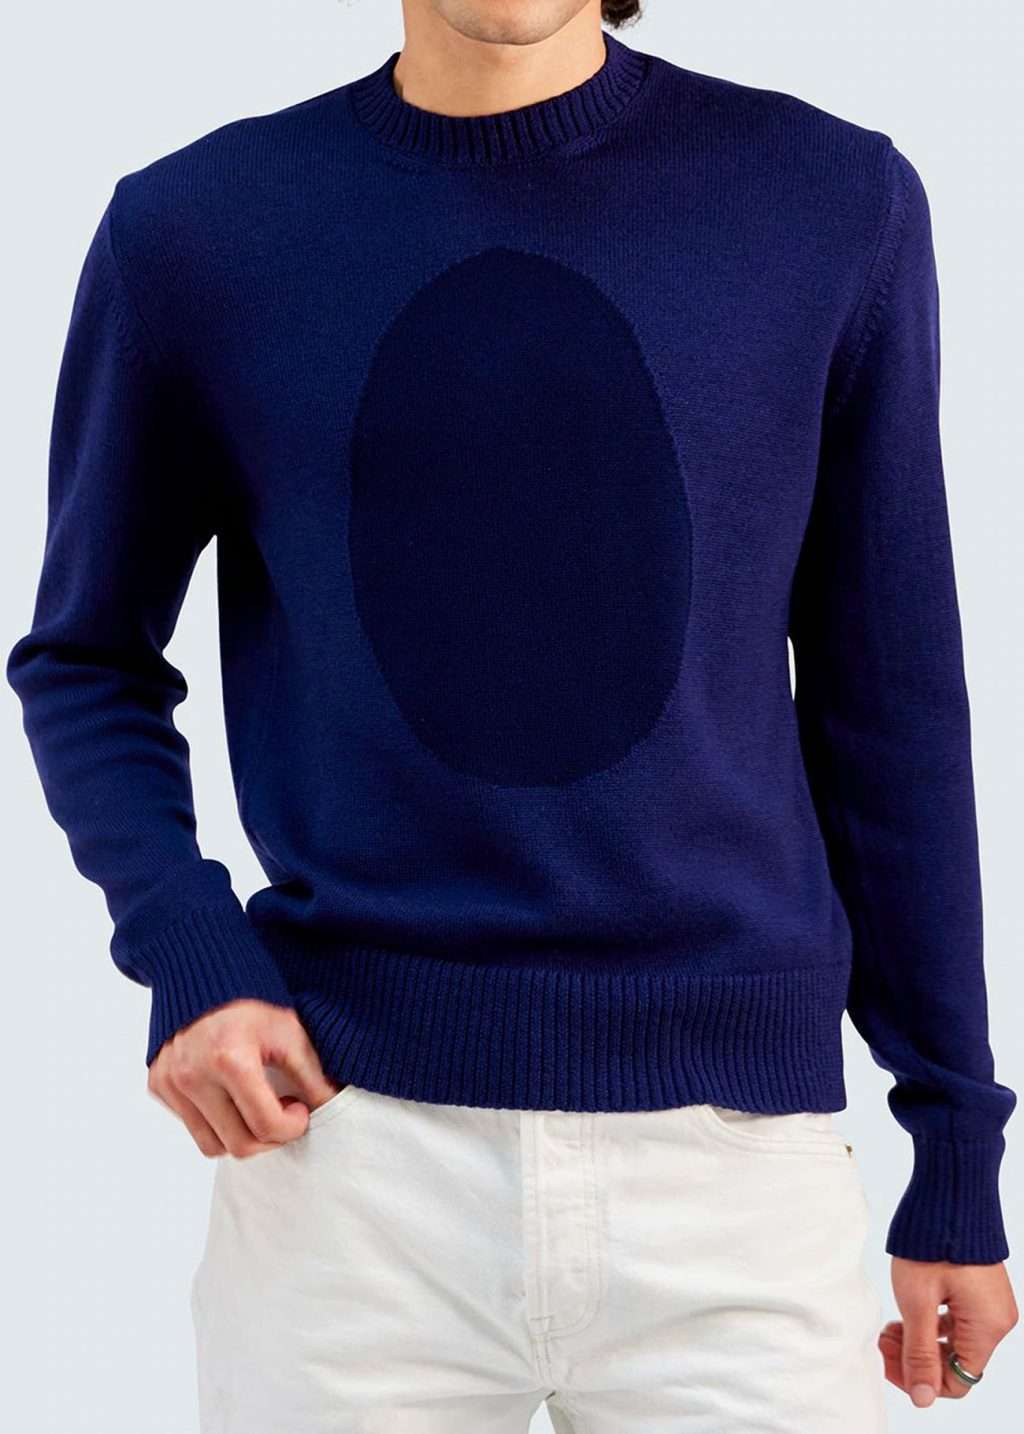 Sagmeister Pedestrian Sweater